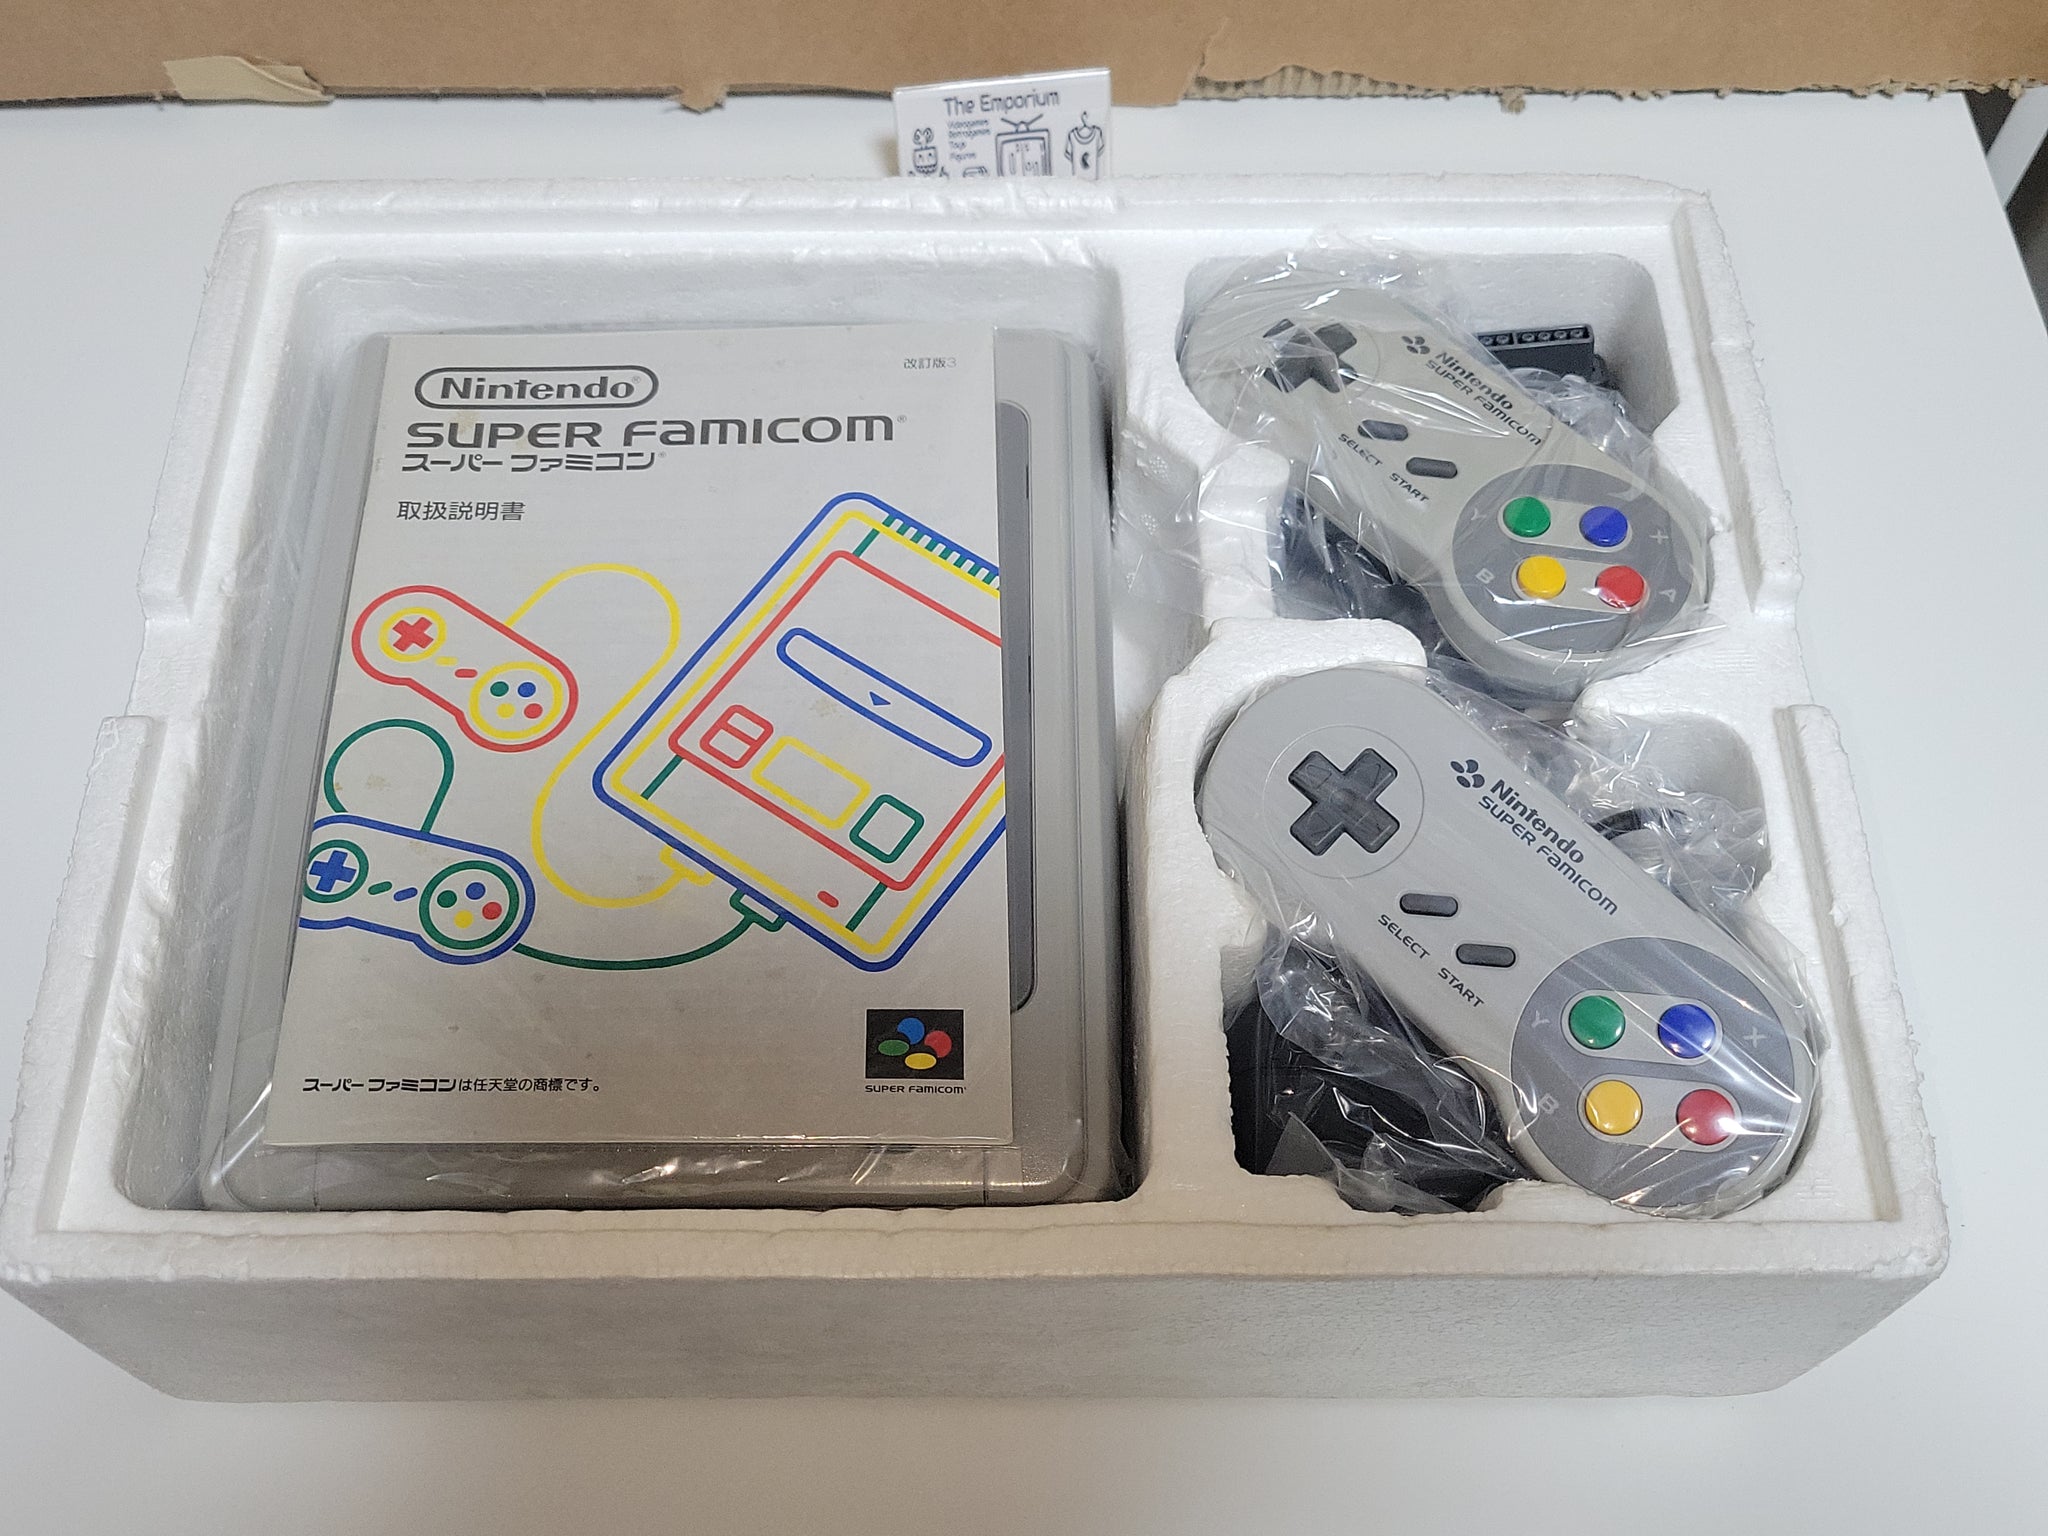 Rokudenashi Blues - Nintendo Sfc Super Famicom – The Emporium RetroGames  and Toys